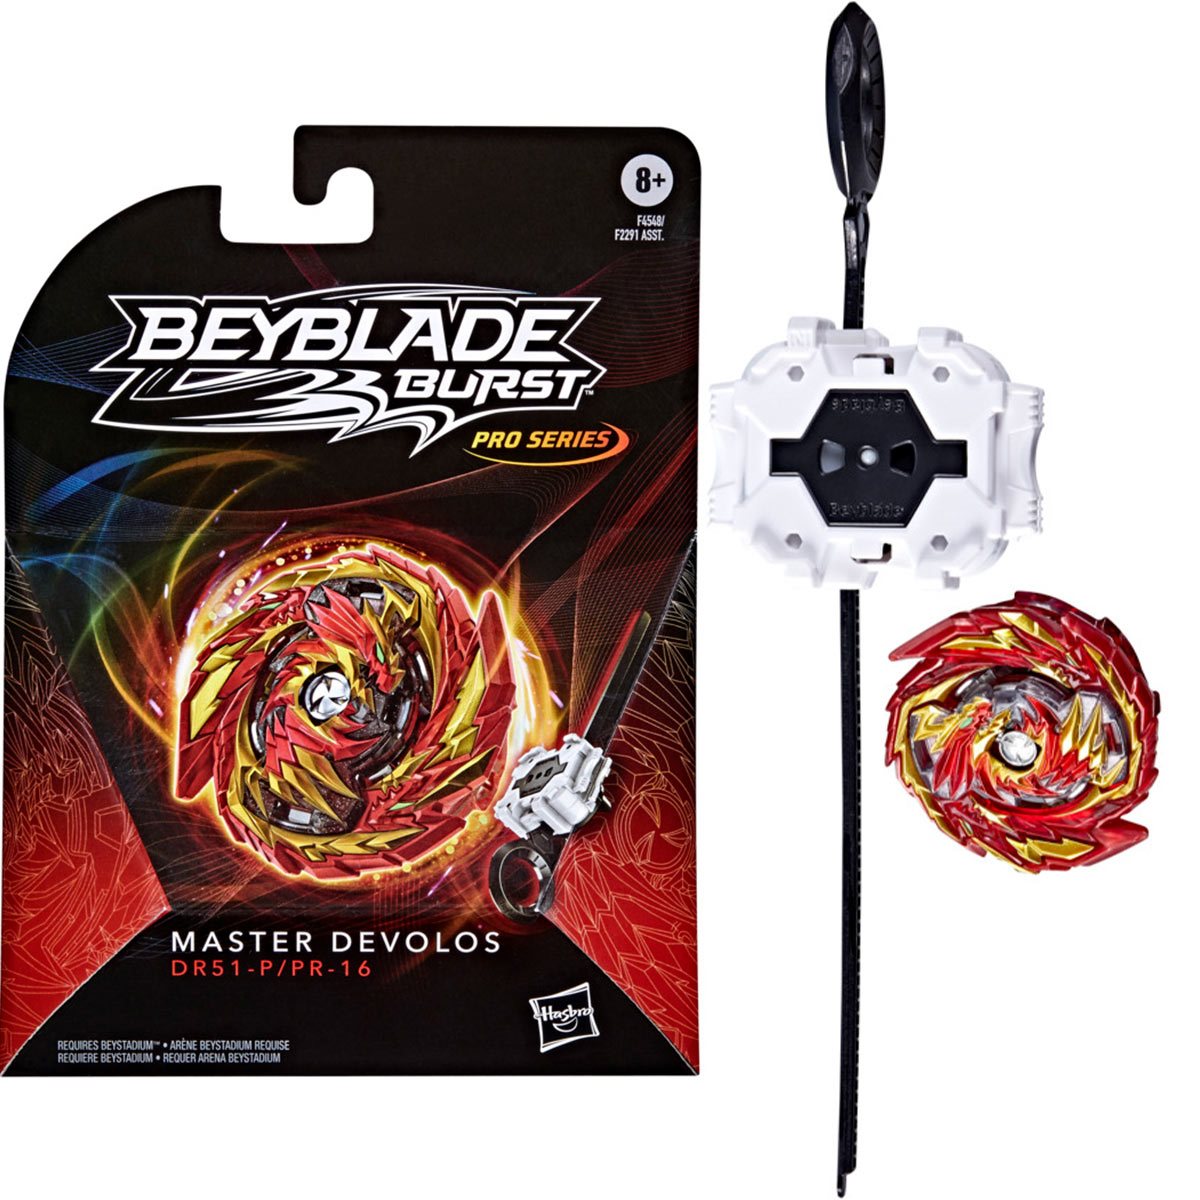 Beyblade Burst Pro Series Master Devolos Spinning